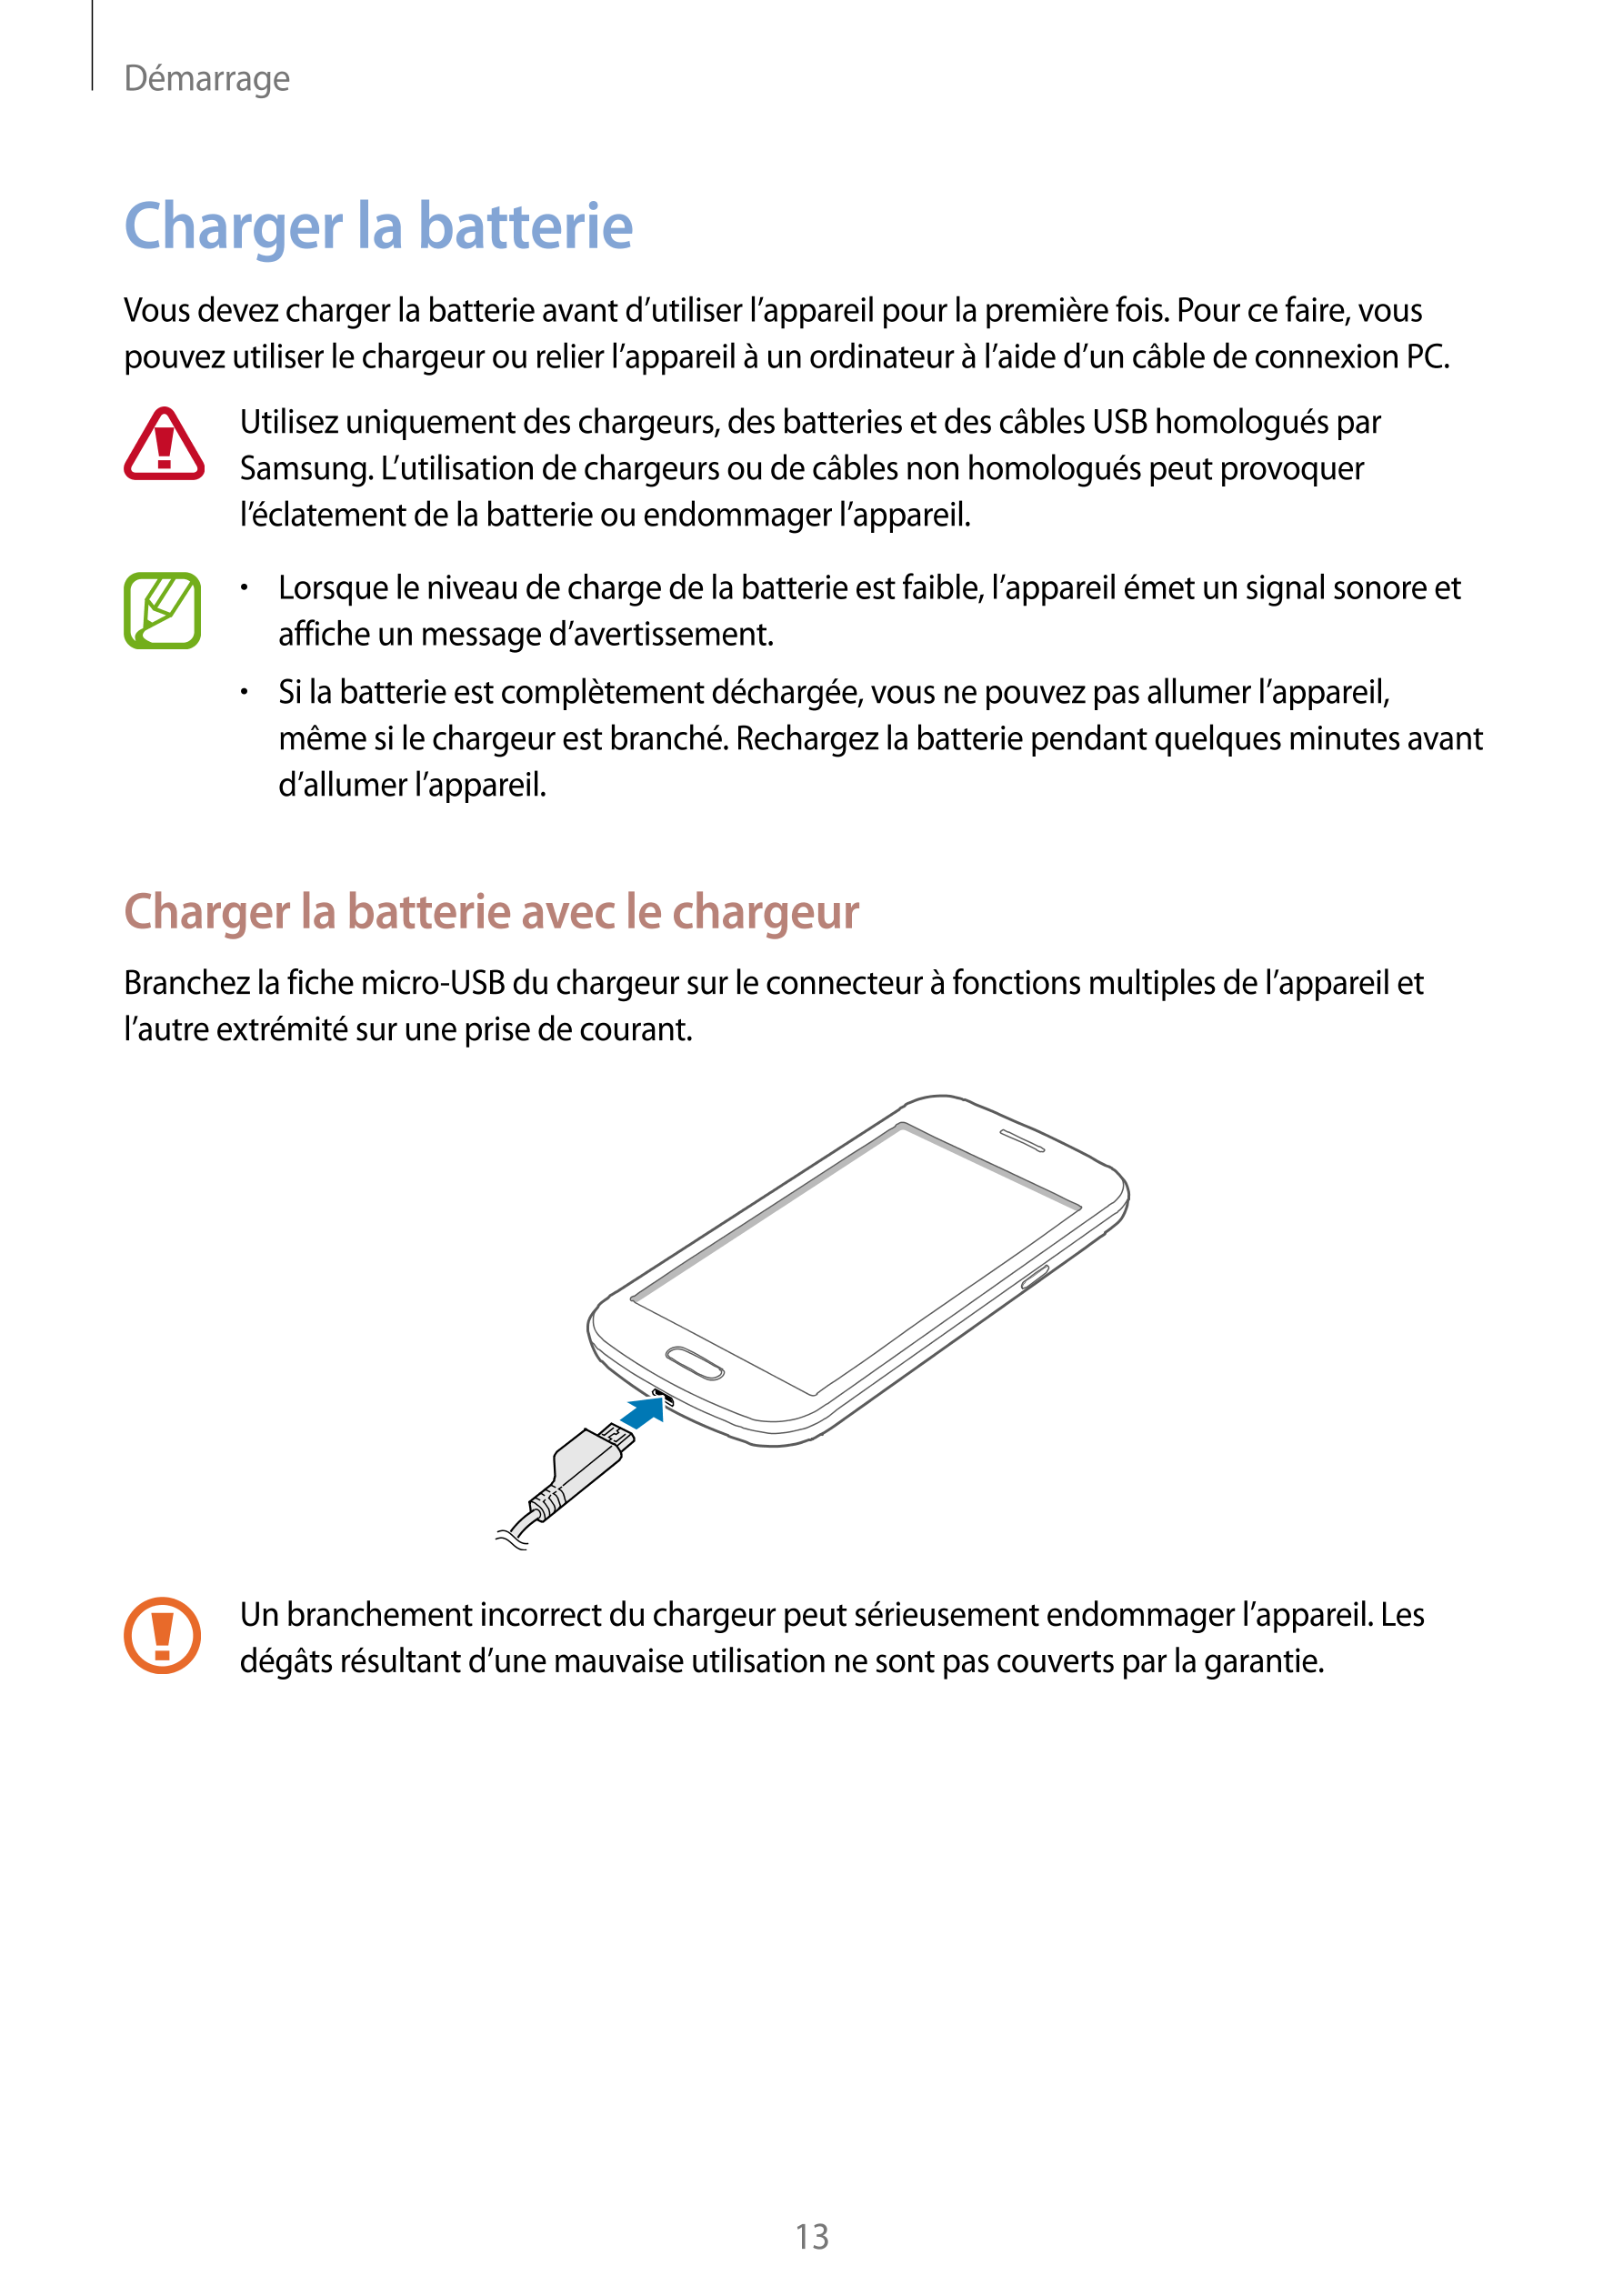 Démarrage
Charger la batterie
Vous devez charger la batterie avant d’utiliser l’appareil pour la première fois. Pour ce faire, v